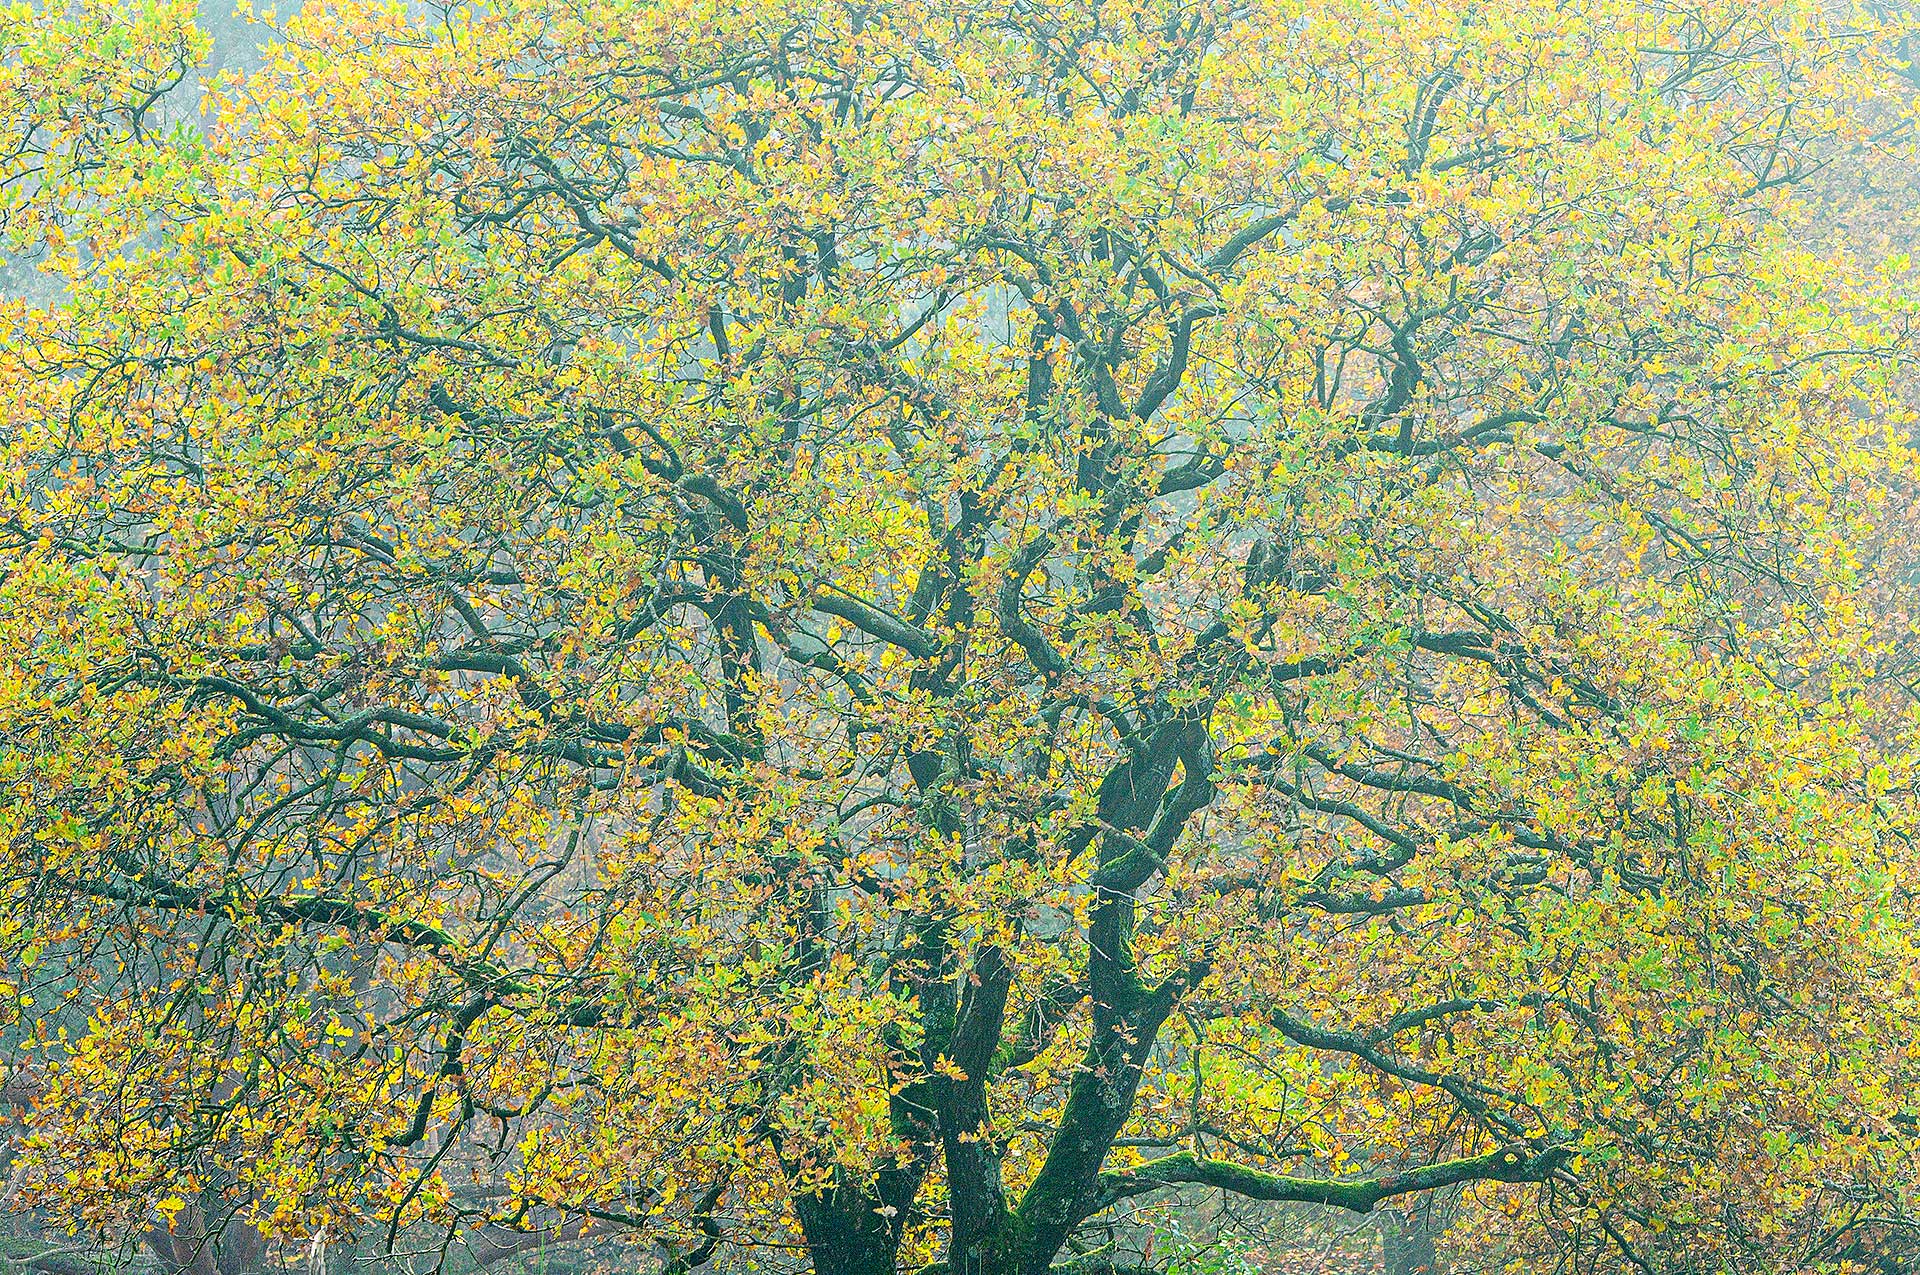 Oak in autumn colors